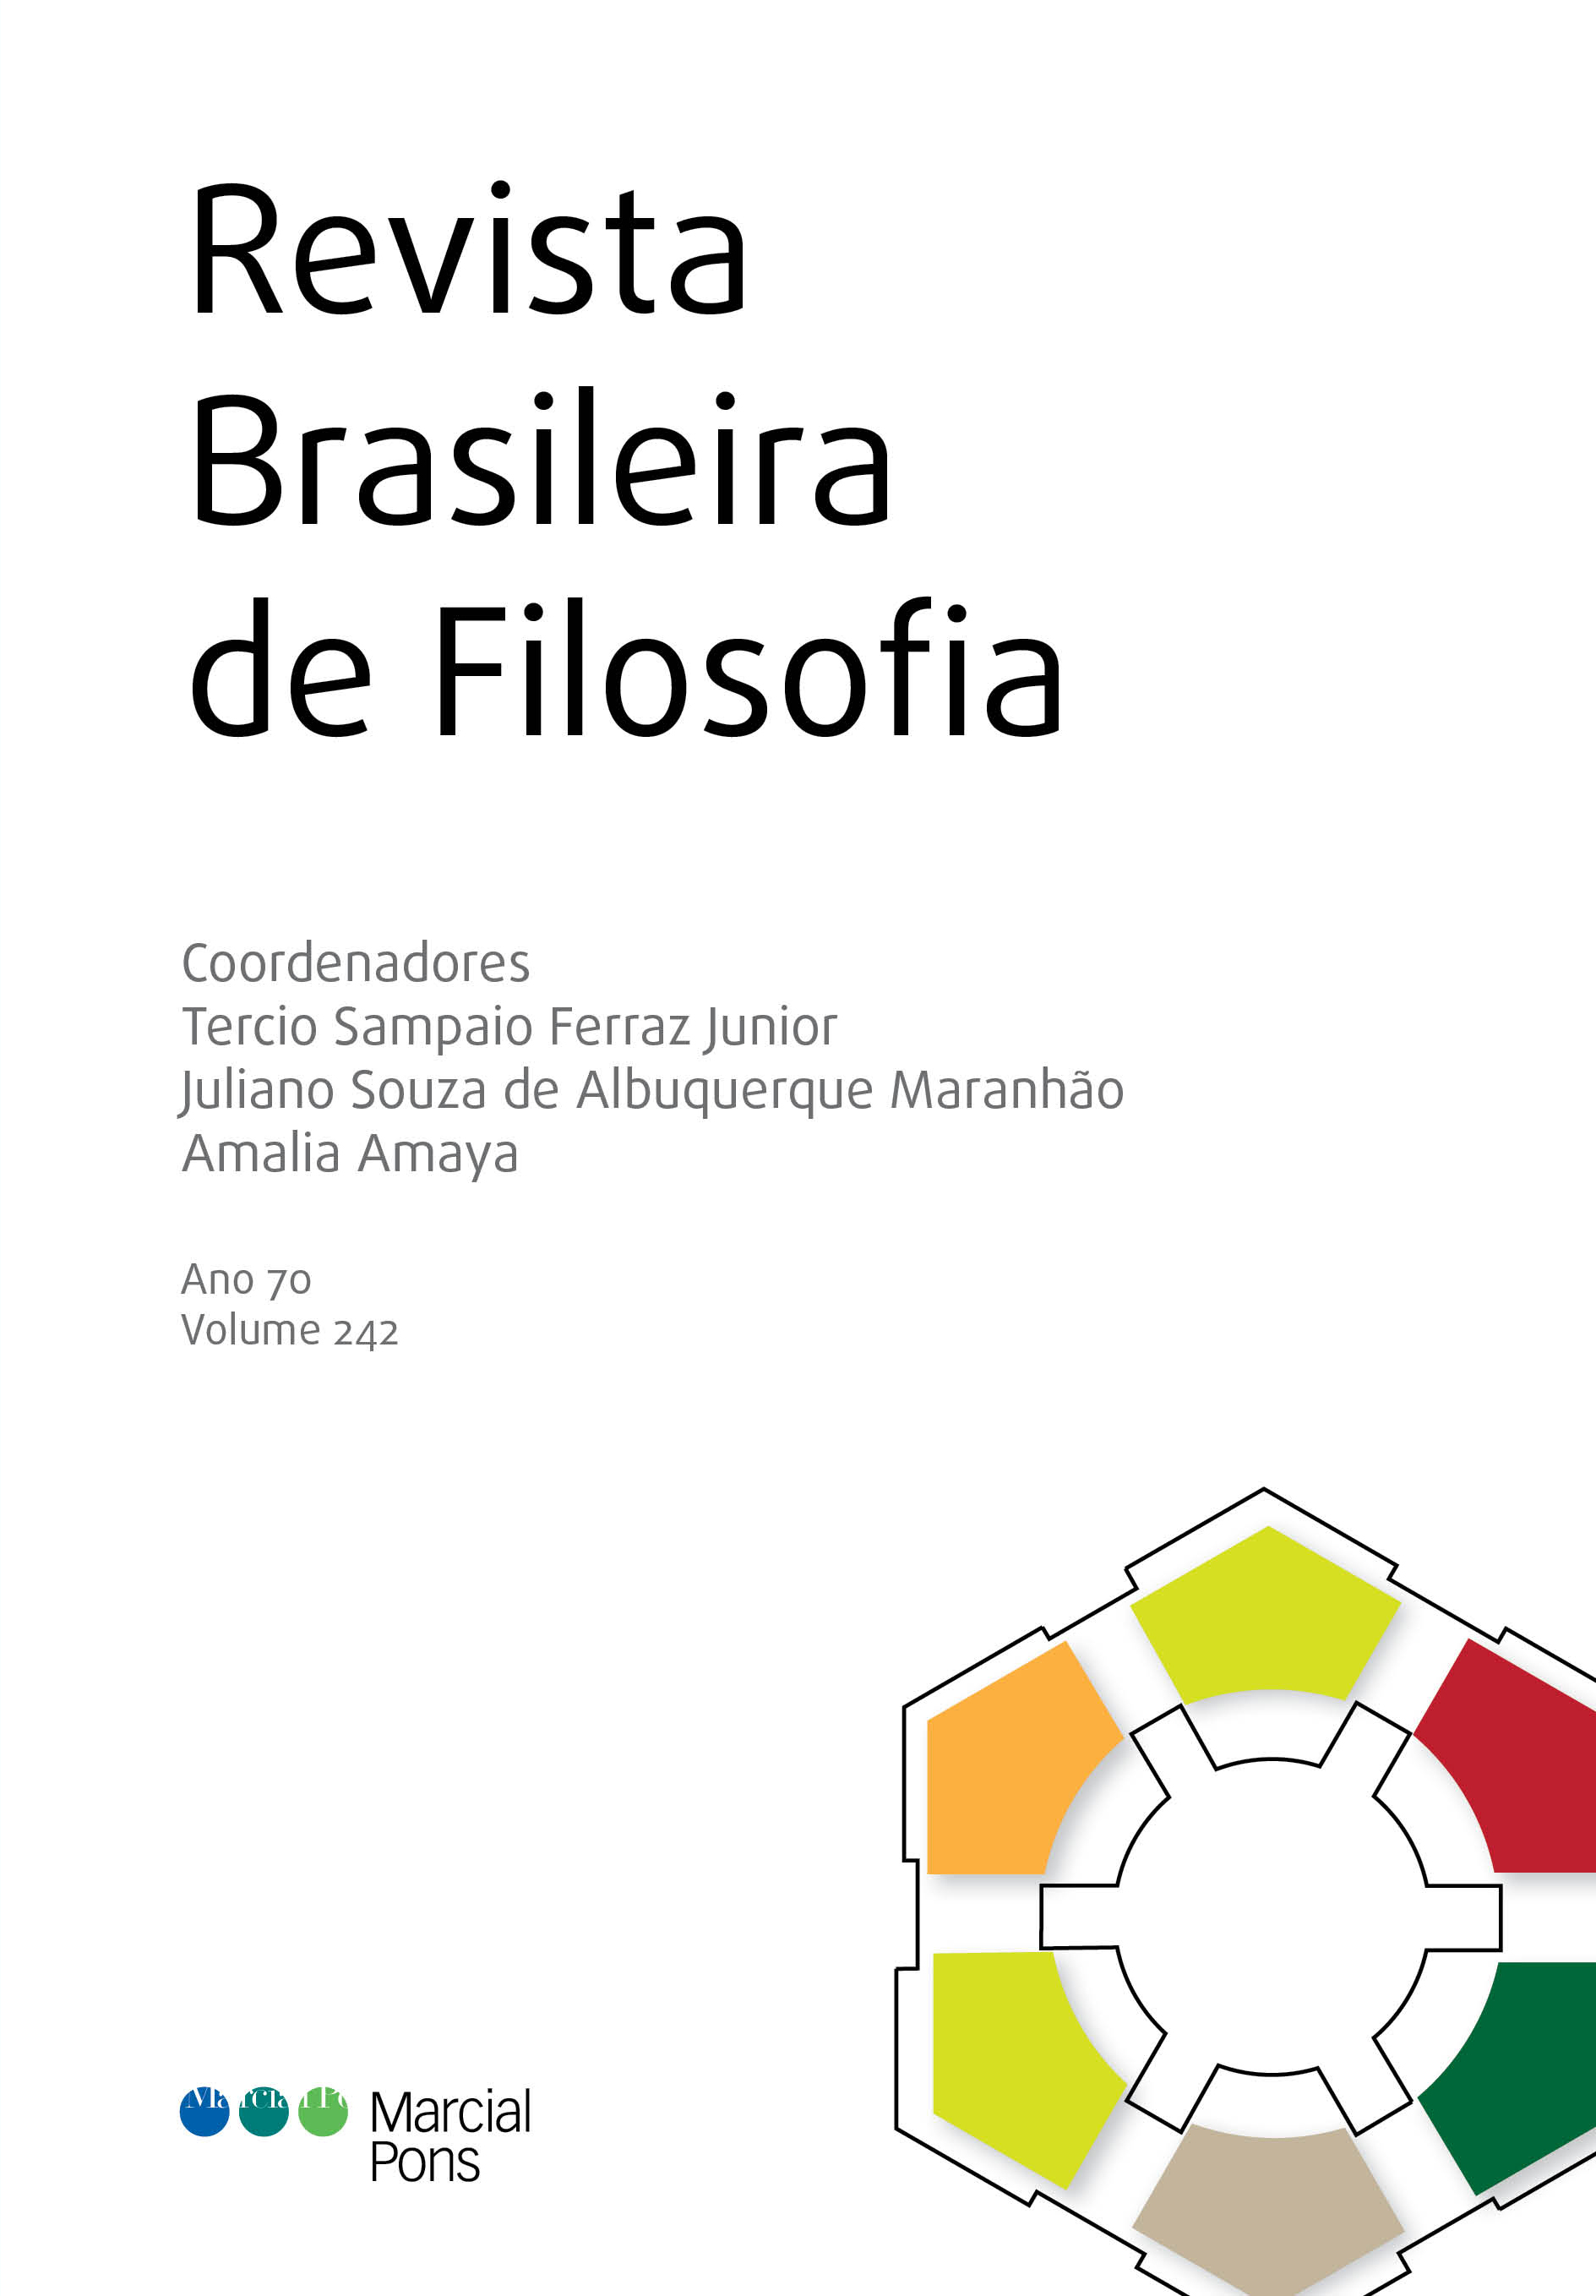 Revista Brasileira de Filosofia. Nº 242